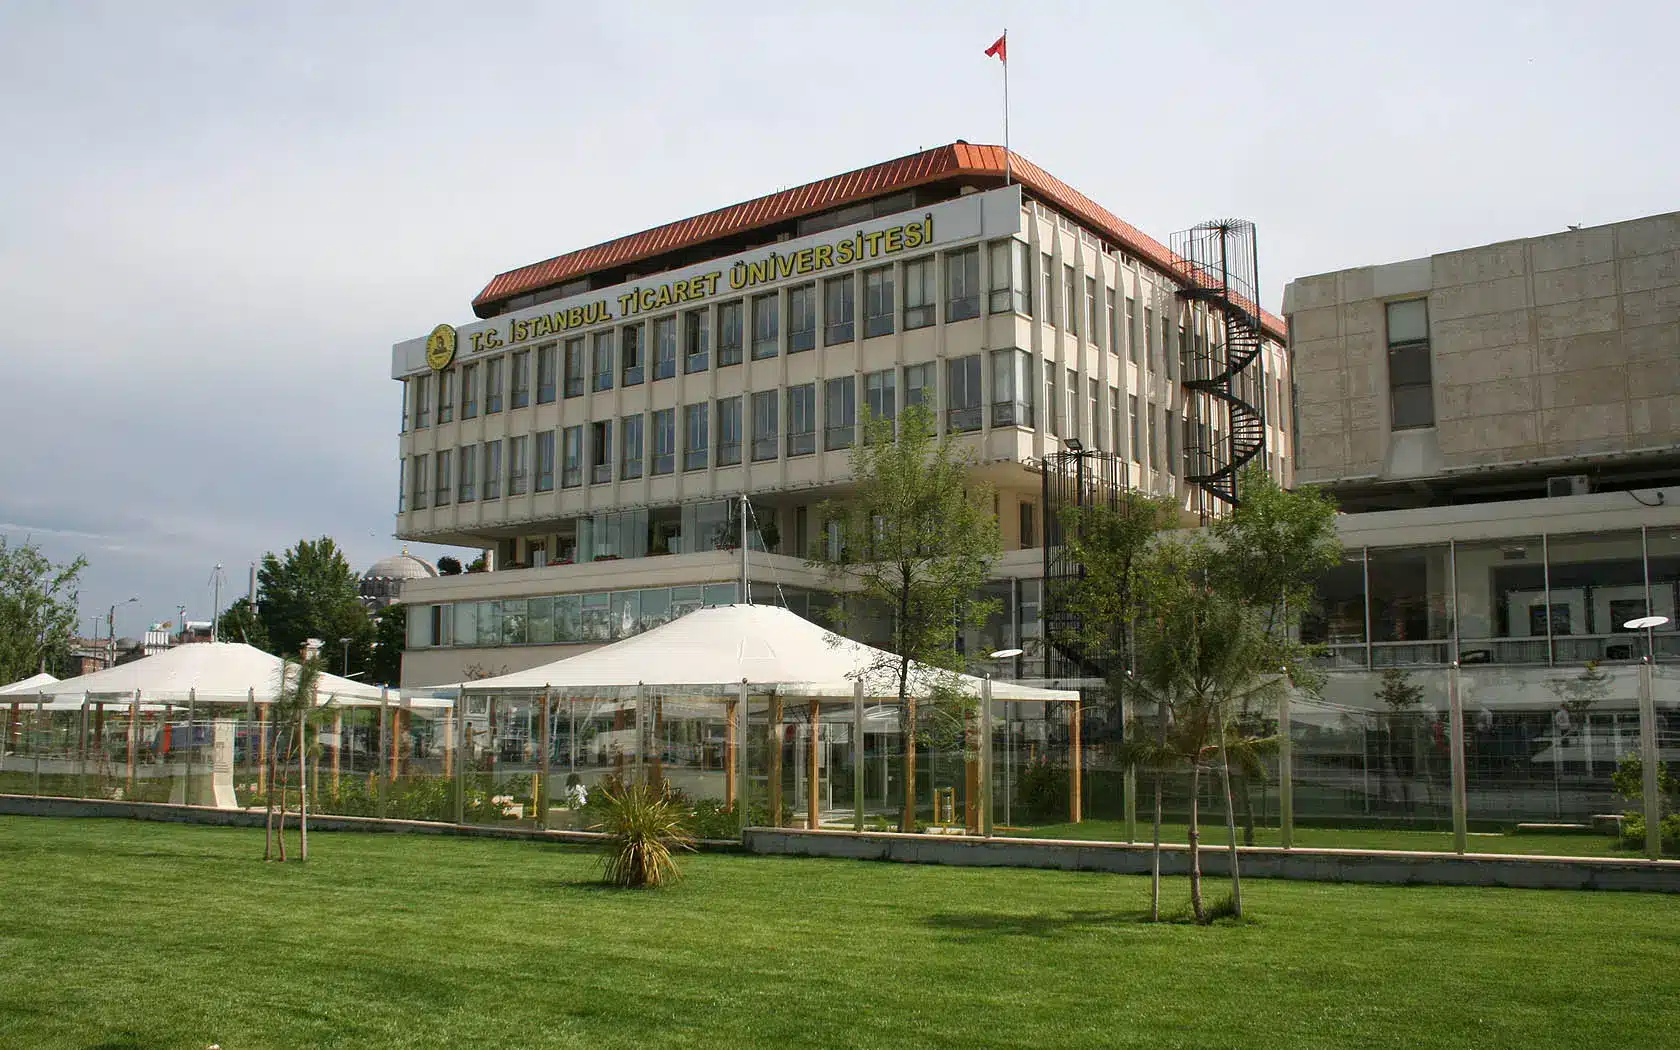 جامعة اسطنبول التجارية